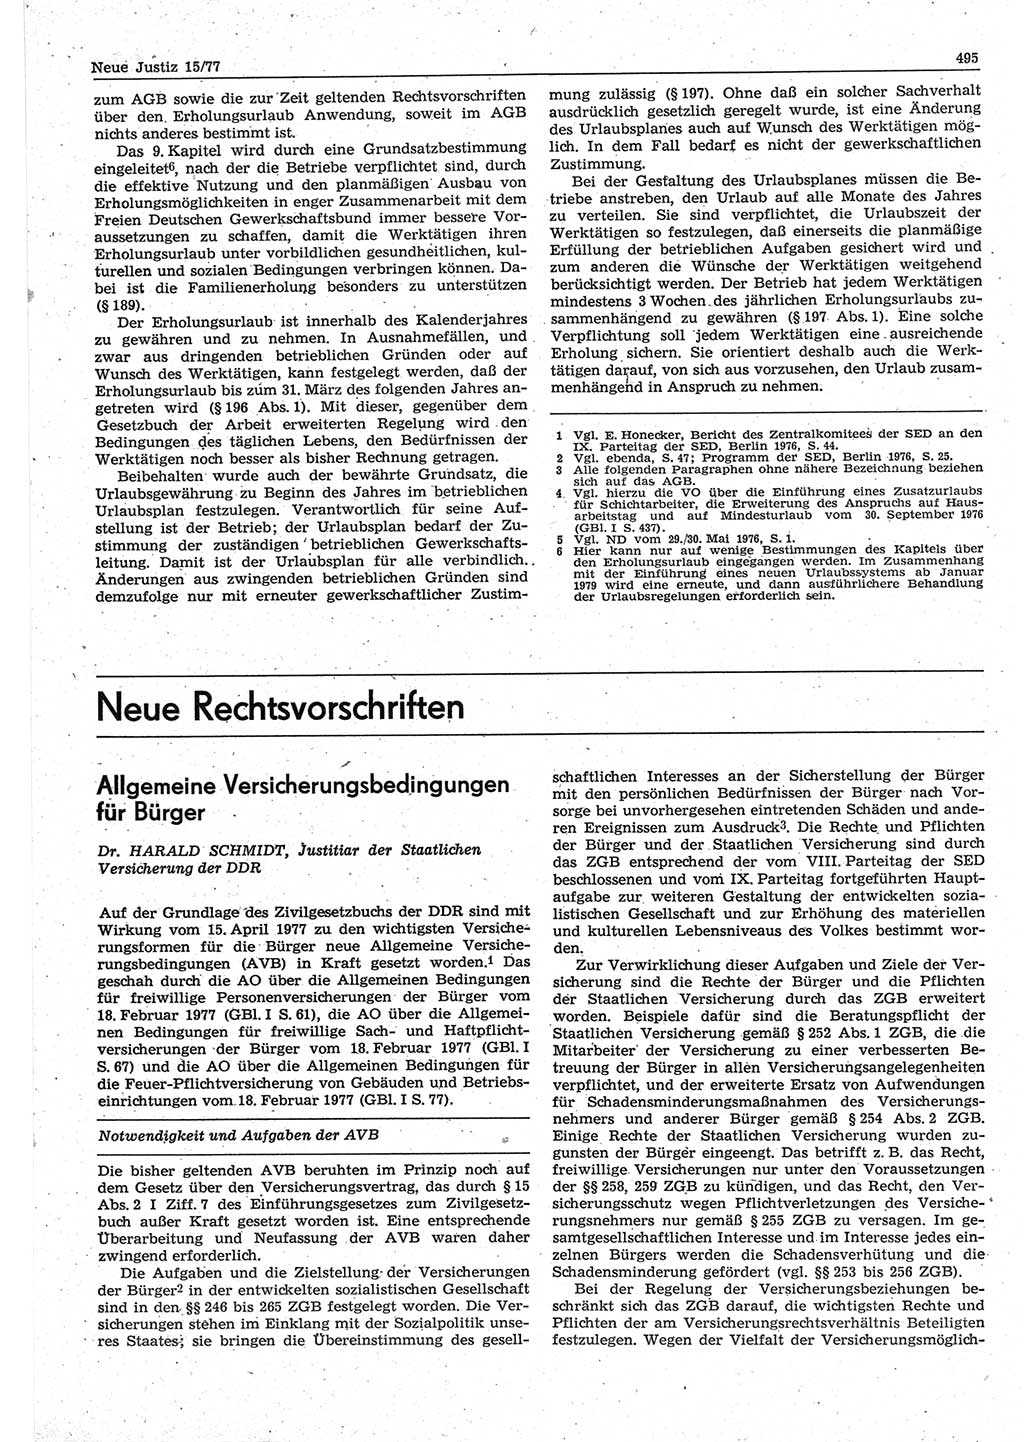 Neue Justiz (NJ), Zeitschrift für Recht und Rechtswissenschaft-Zeitschrift, sozialistisches Recht und Gesetzlichkeit, 31. Jahrgang 1977, Seite 495 (NJ DDR 1977, S. 495)